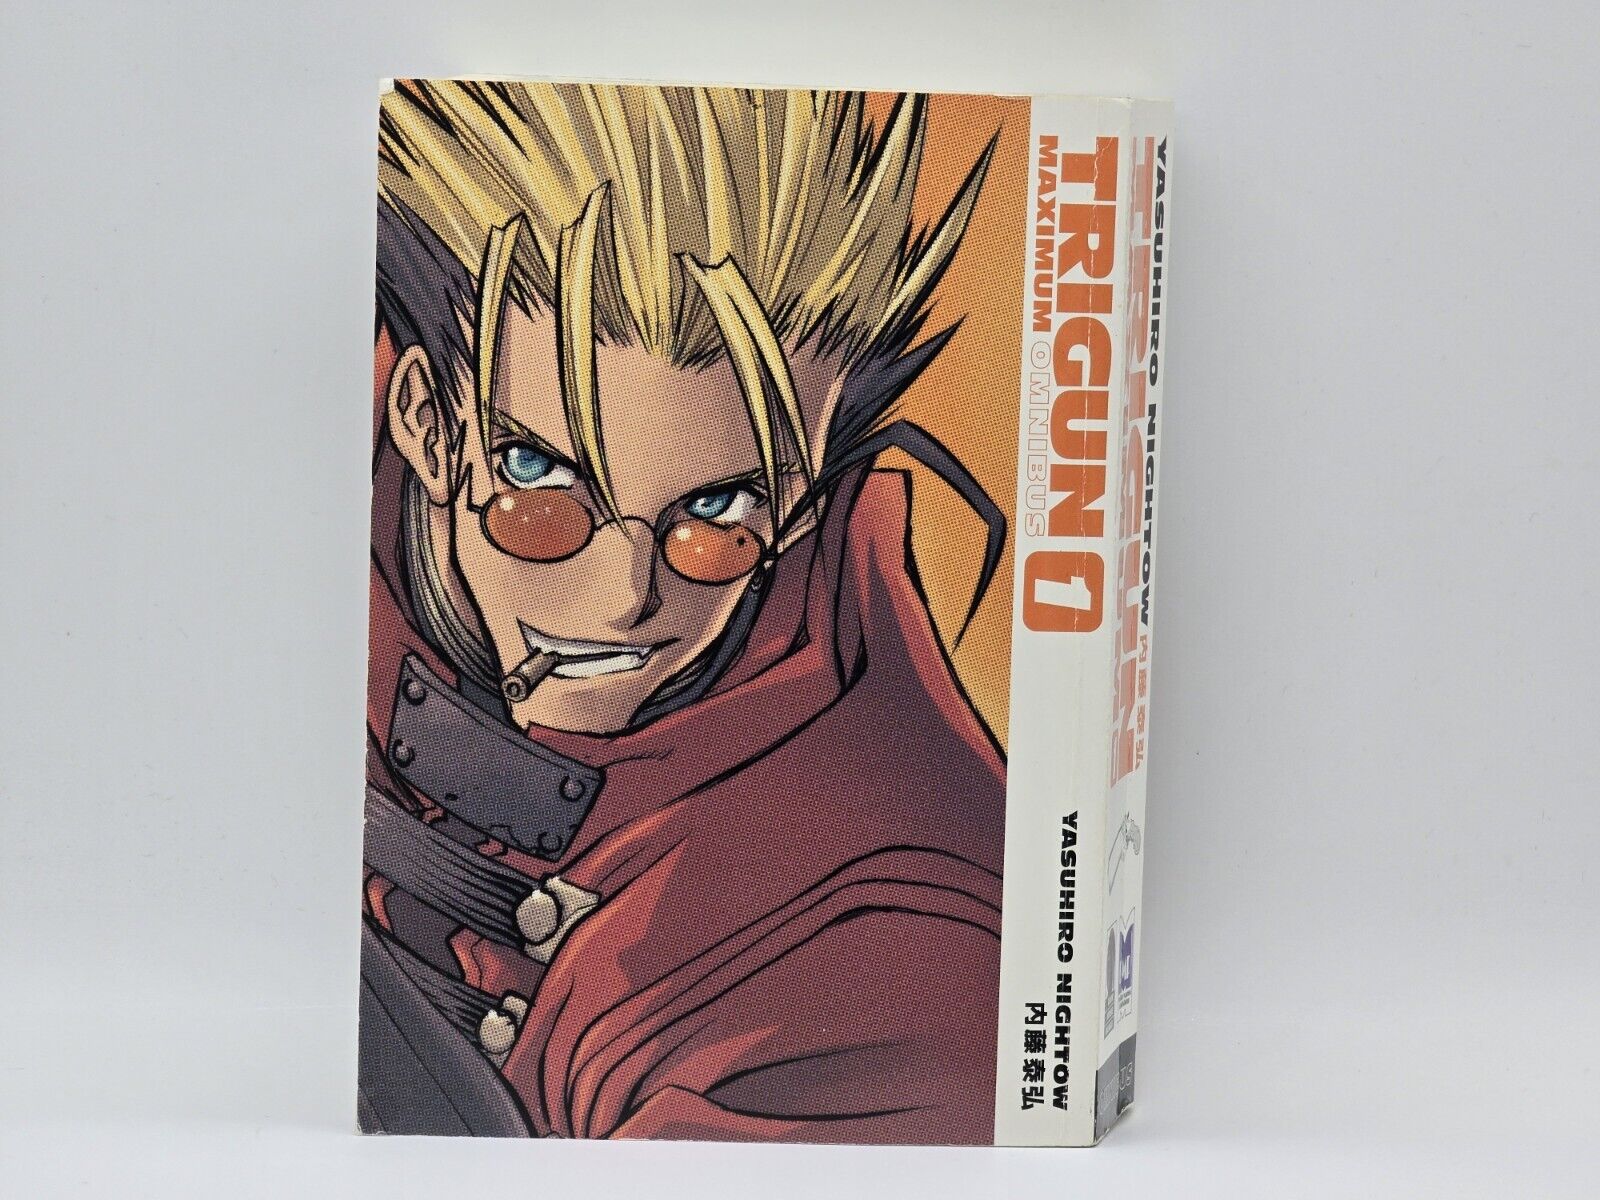 Trigun Maximum Omnibus Vol 1 (English) by Yasuhiro Nightow Paperback 2012 